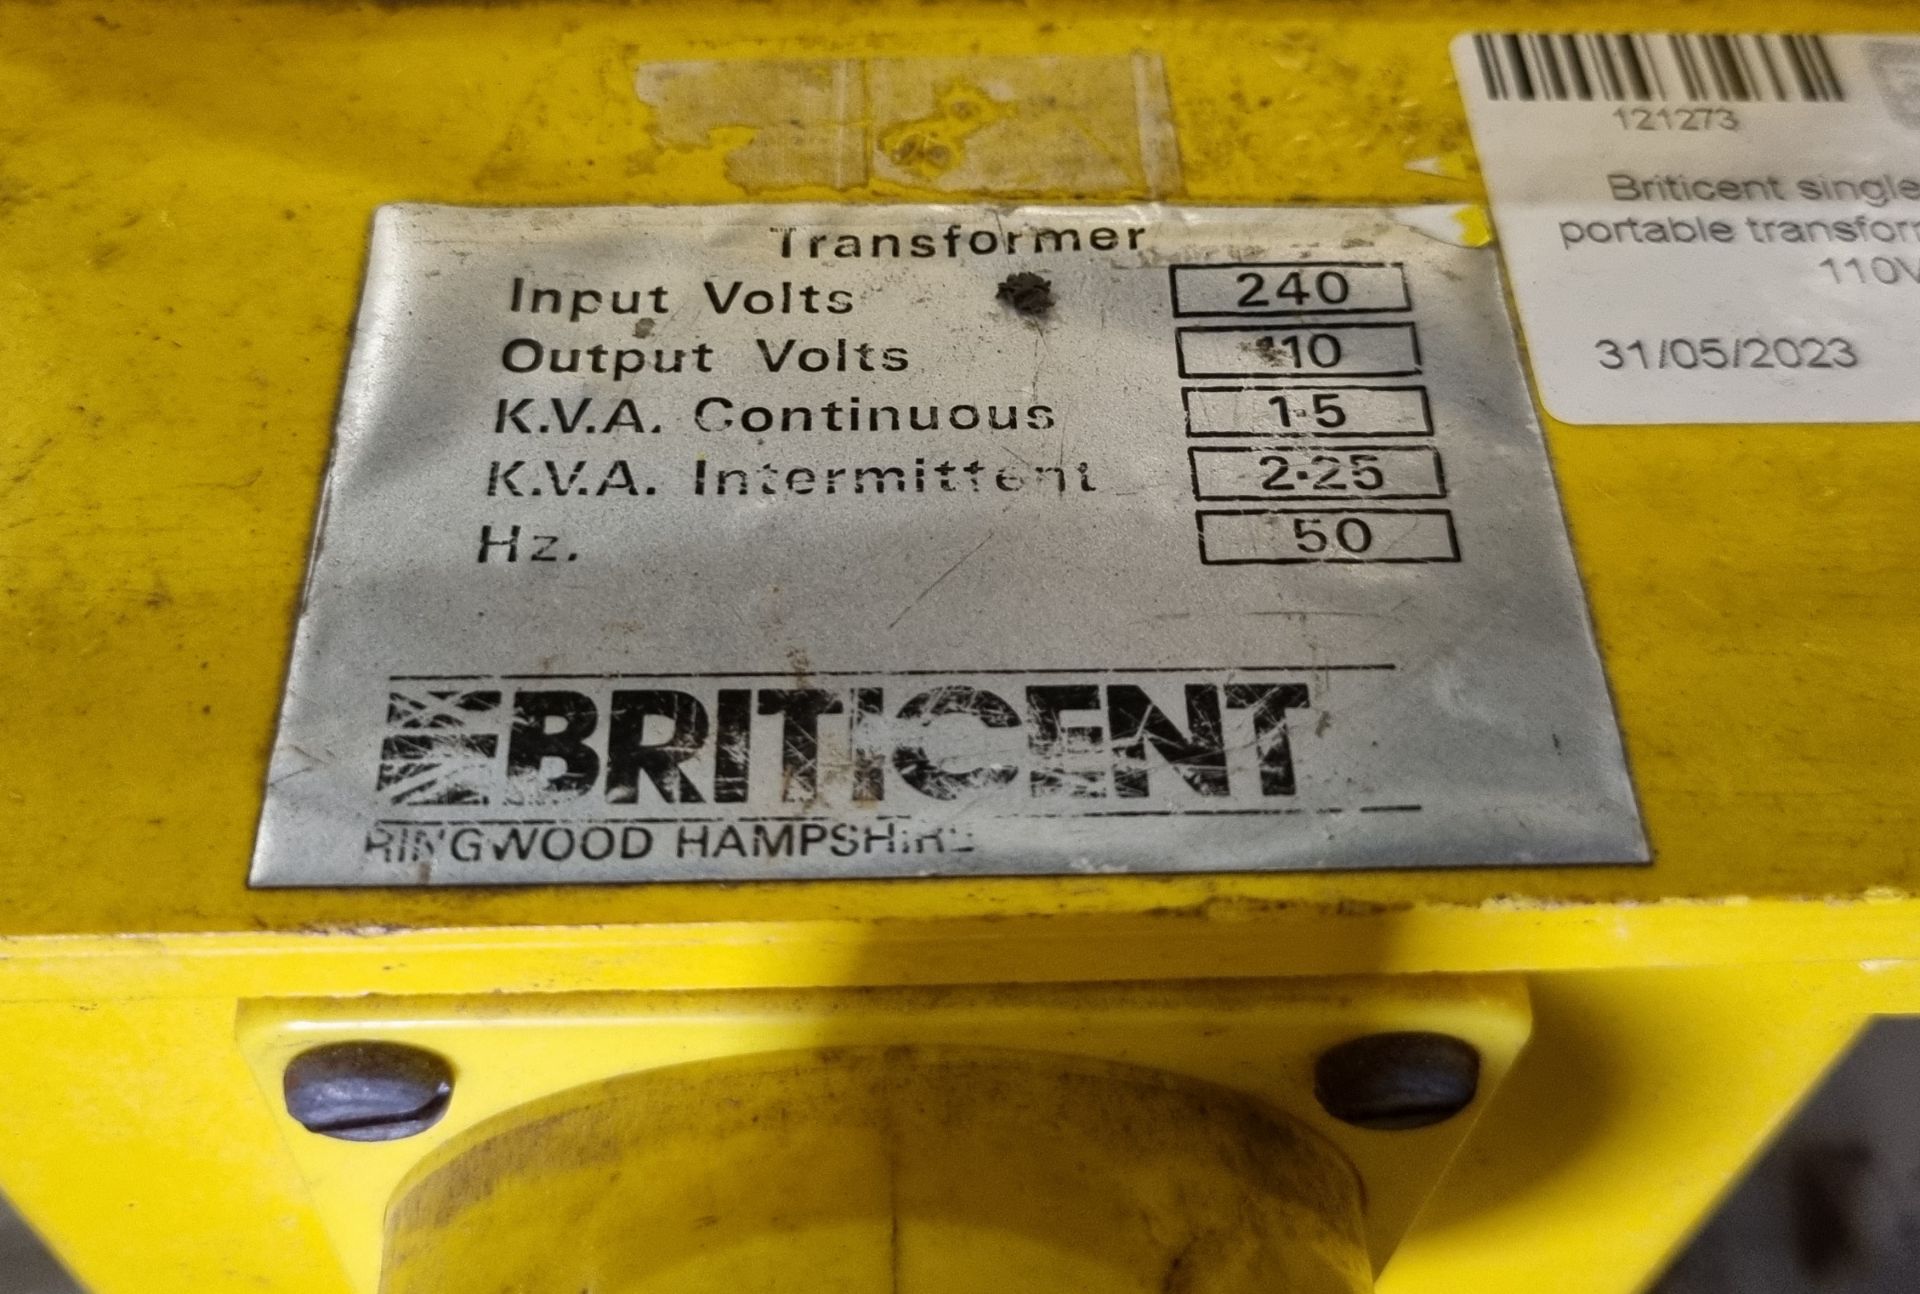 Briticent single socket portable transformer 240V - 110V - Bild 4 aus 4